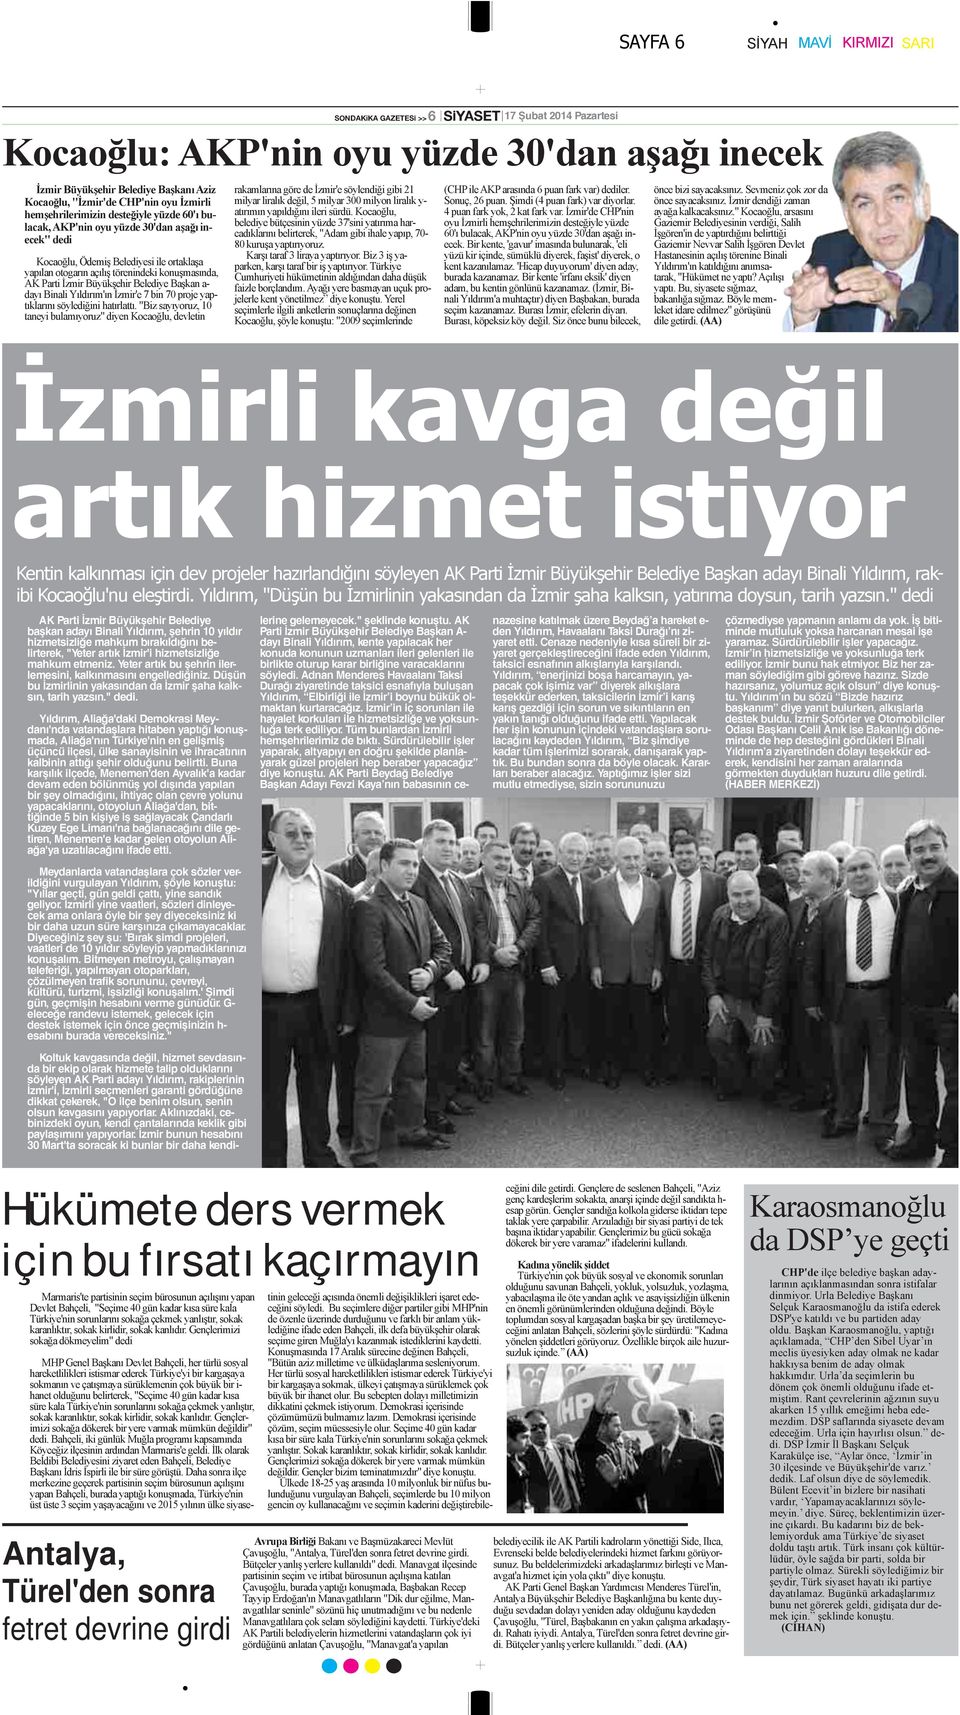 Parti İzmir Büyükşehir Belediye Başkan a- dayı Binali Yıldırım'ın İzmir'e 7 bin 70 proje yaptıklarını söylediğini hatırlattı.